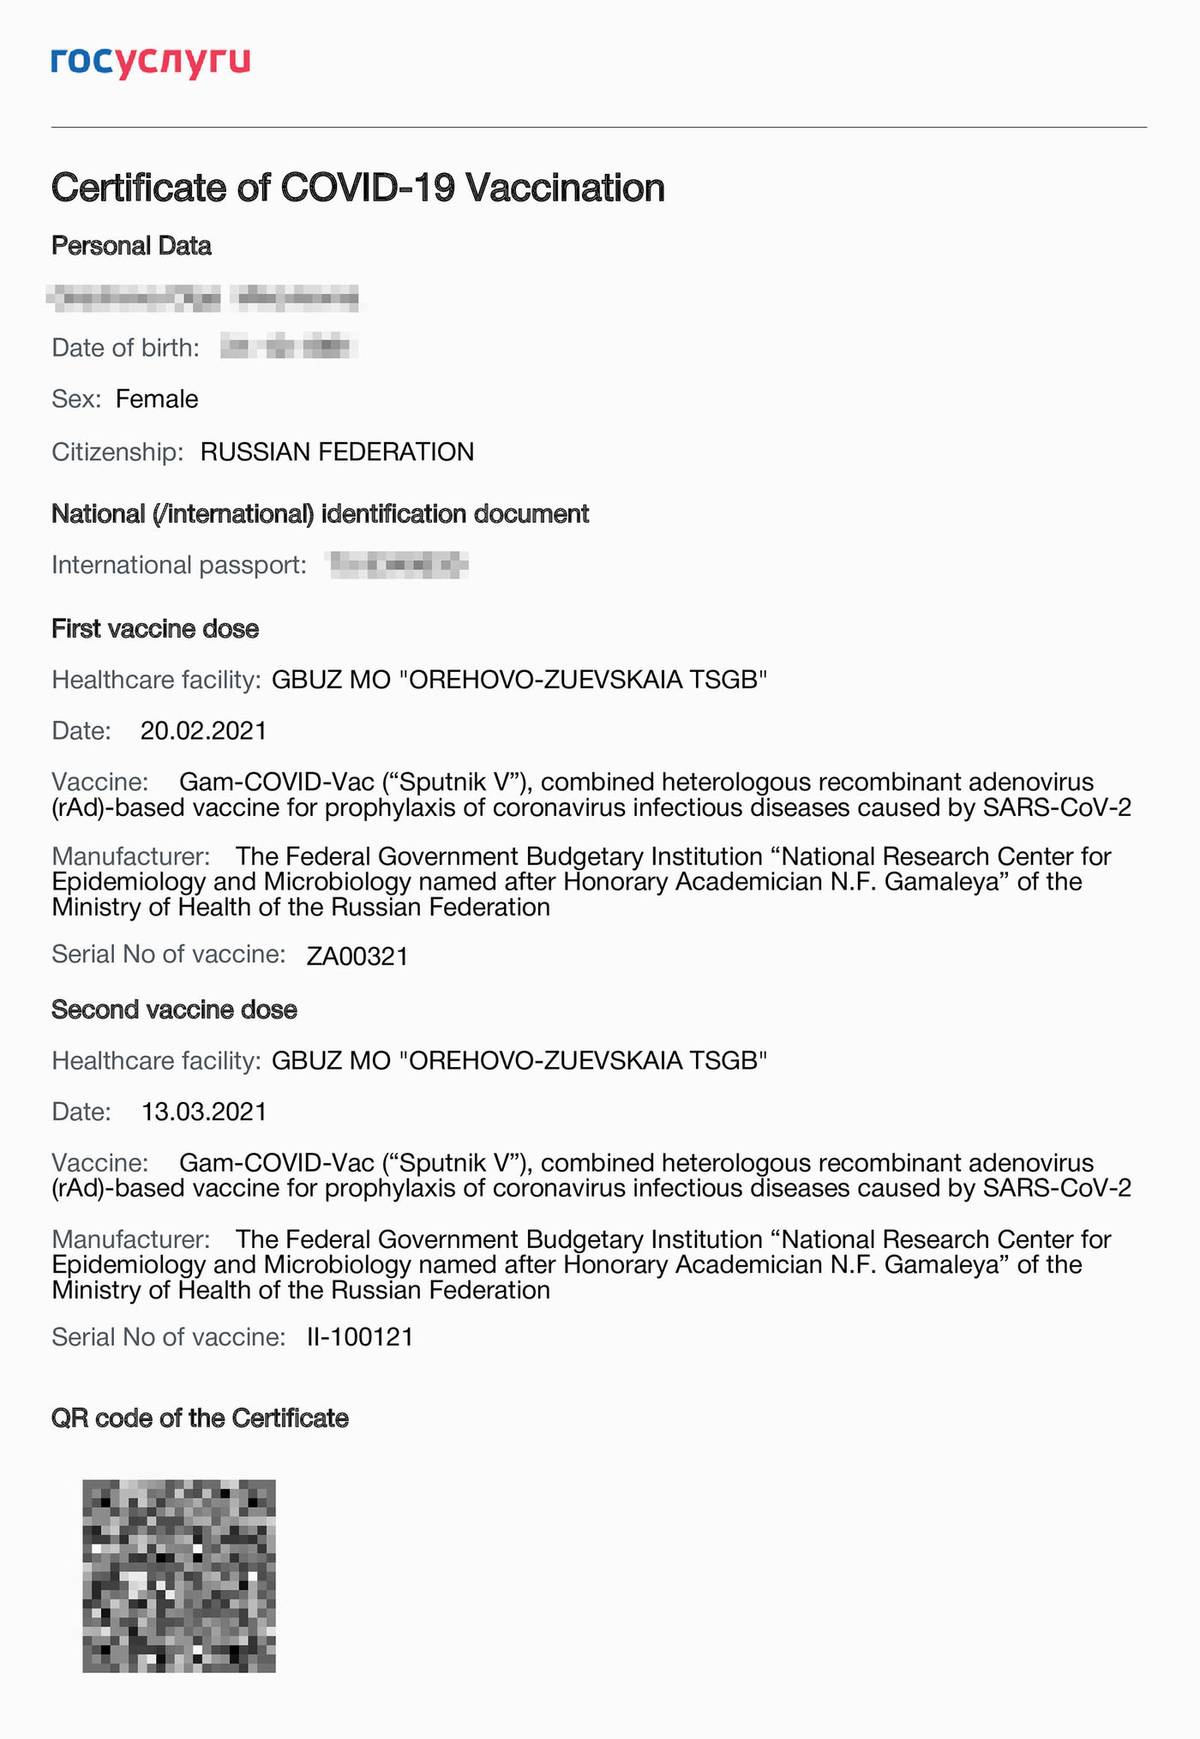 Так выглядит сертификат о вакцинации от COVID-19 на английском языке. Его можно скачать в личном кабинете на портале госуслуг после того, как вам введут второй компонент вакцины «Спутник V». Вариант сертификата на русском языке выдают на руки сразу после постановки второго компонента